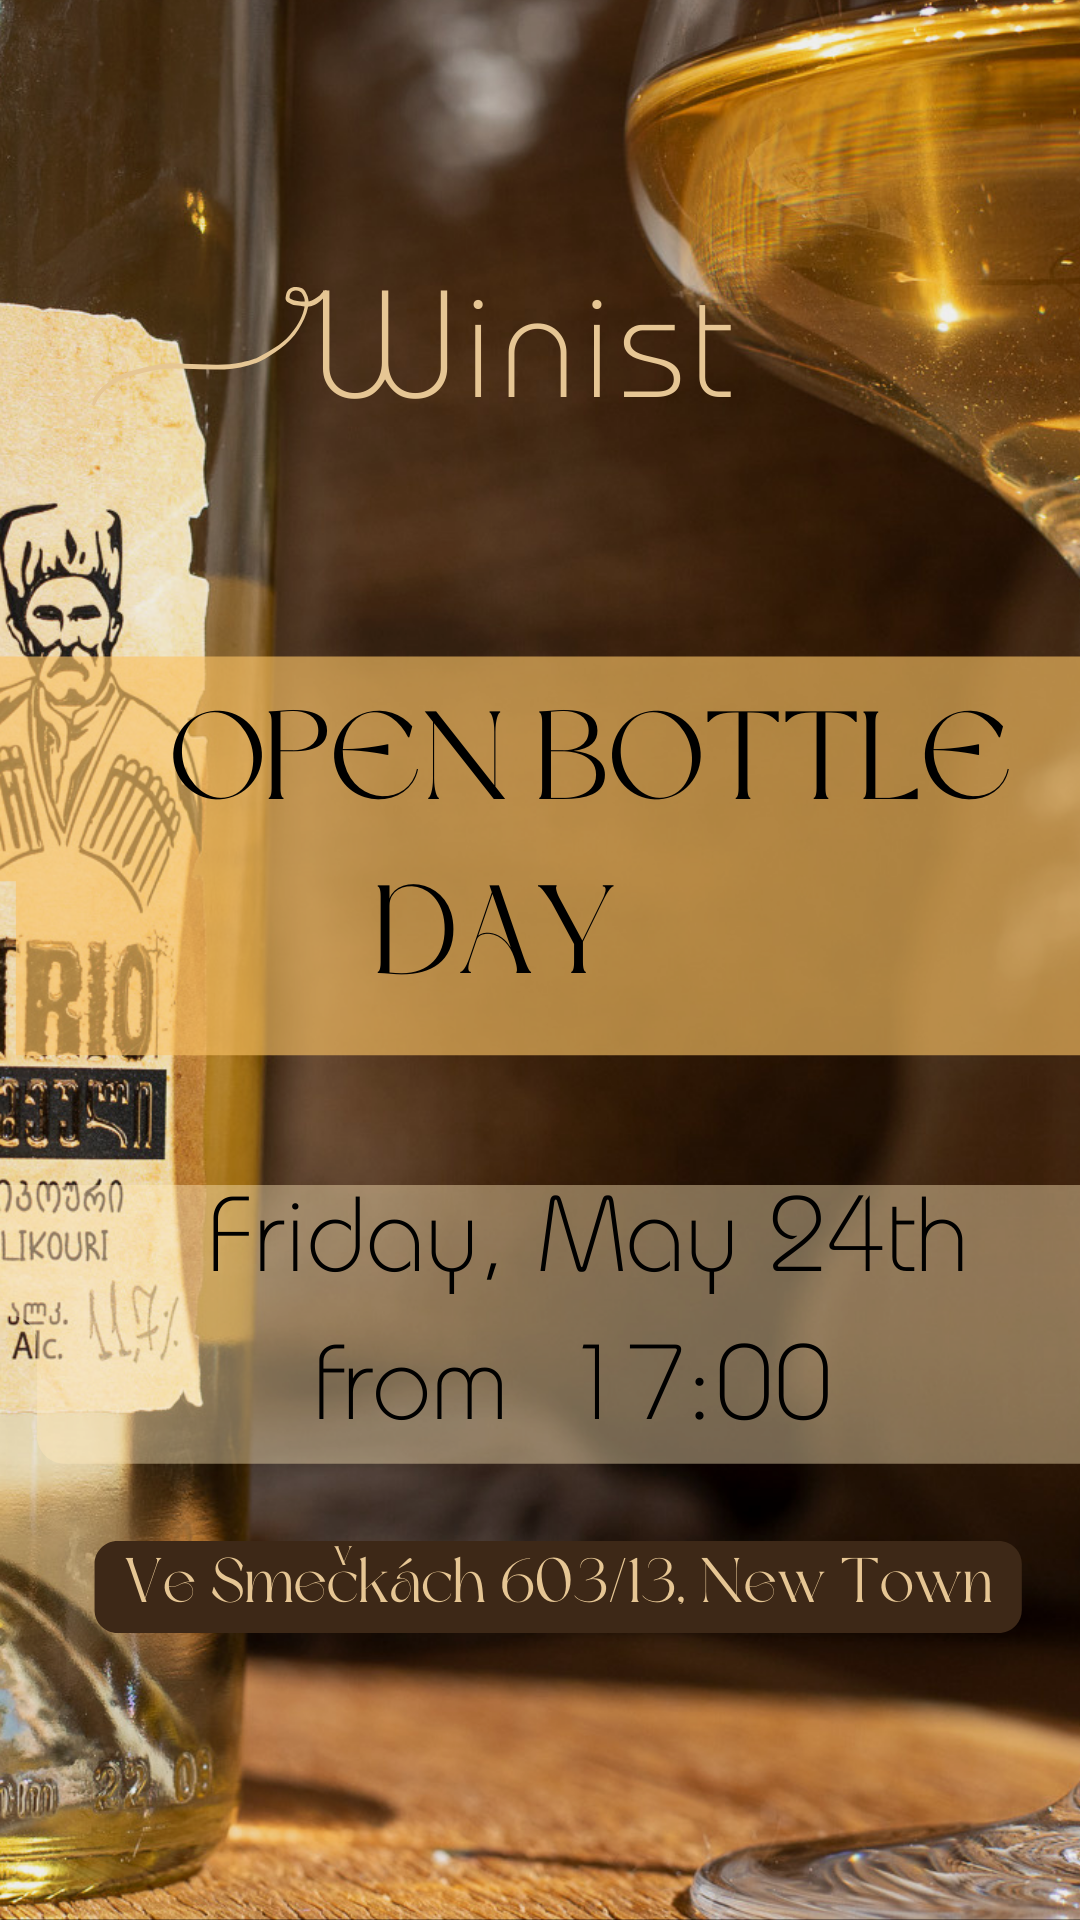 Open bottle day